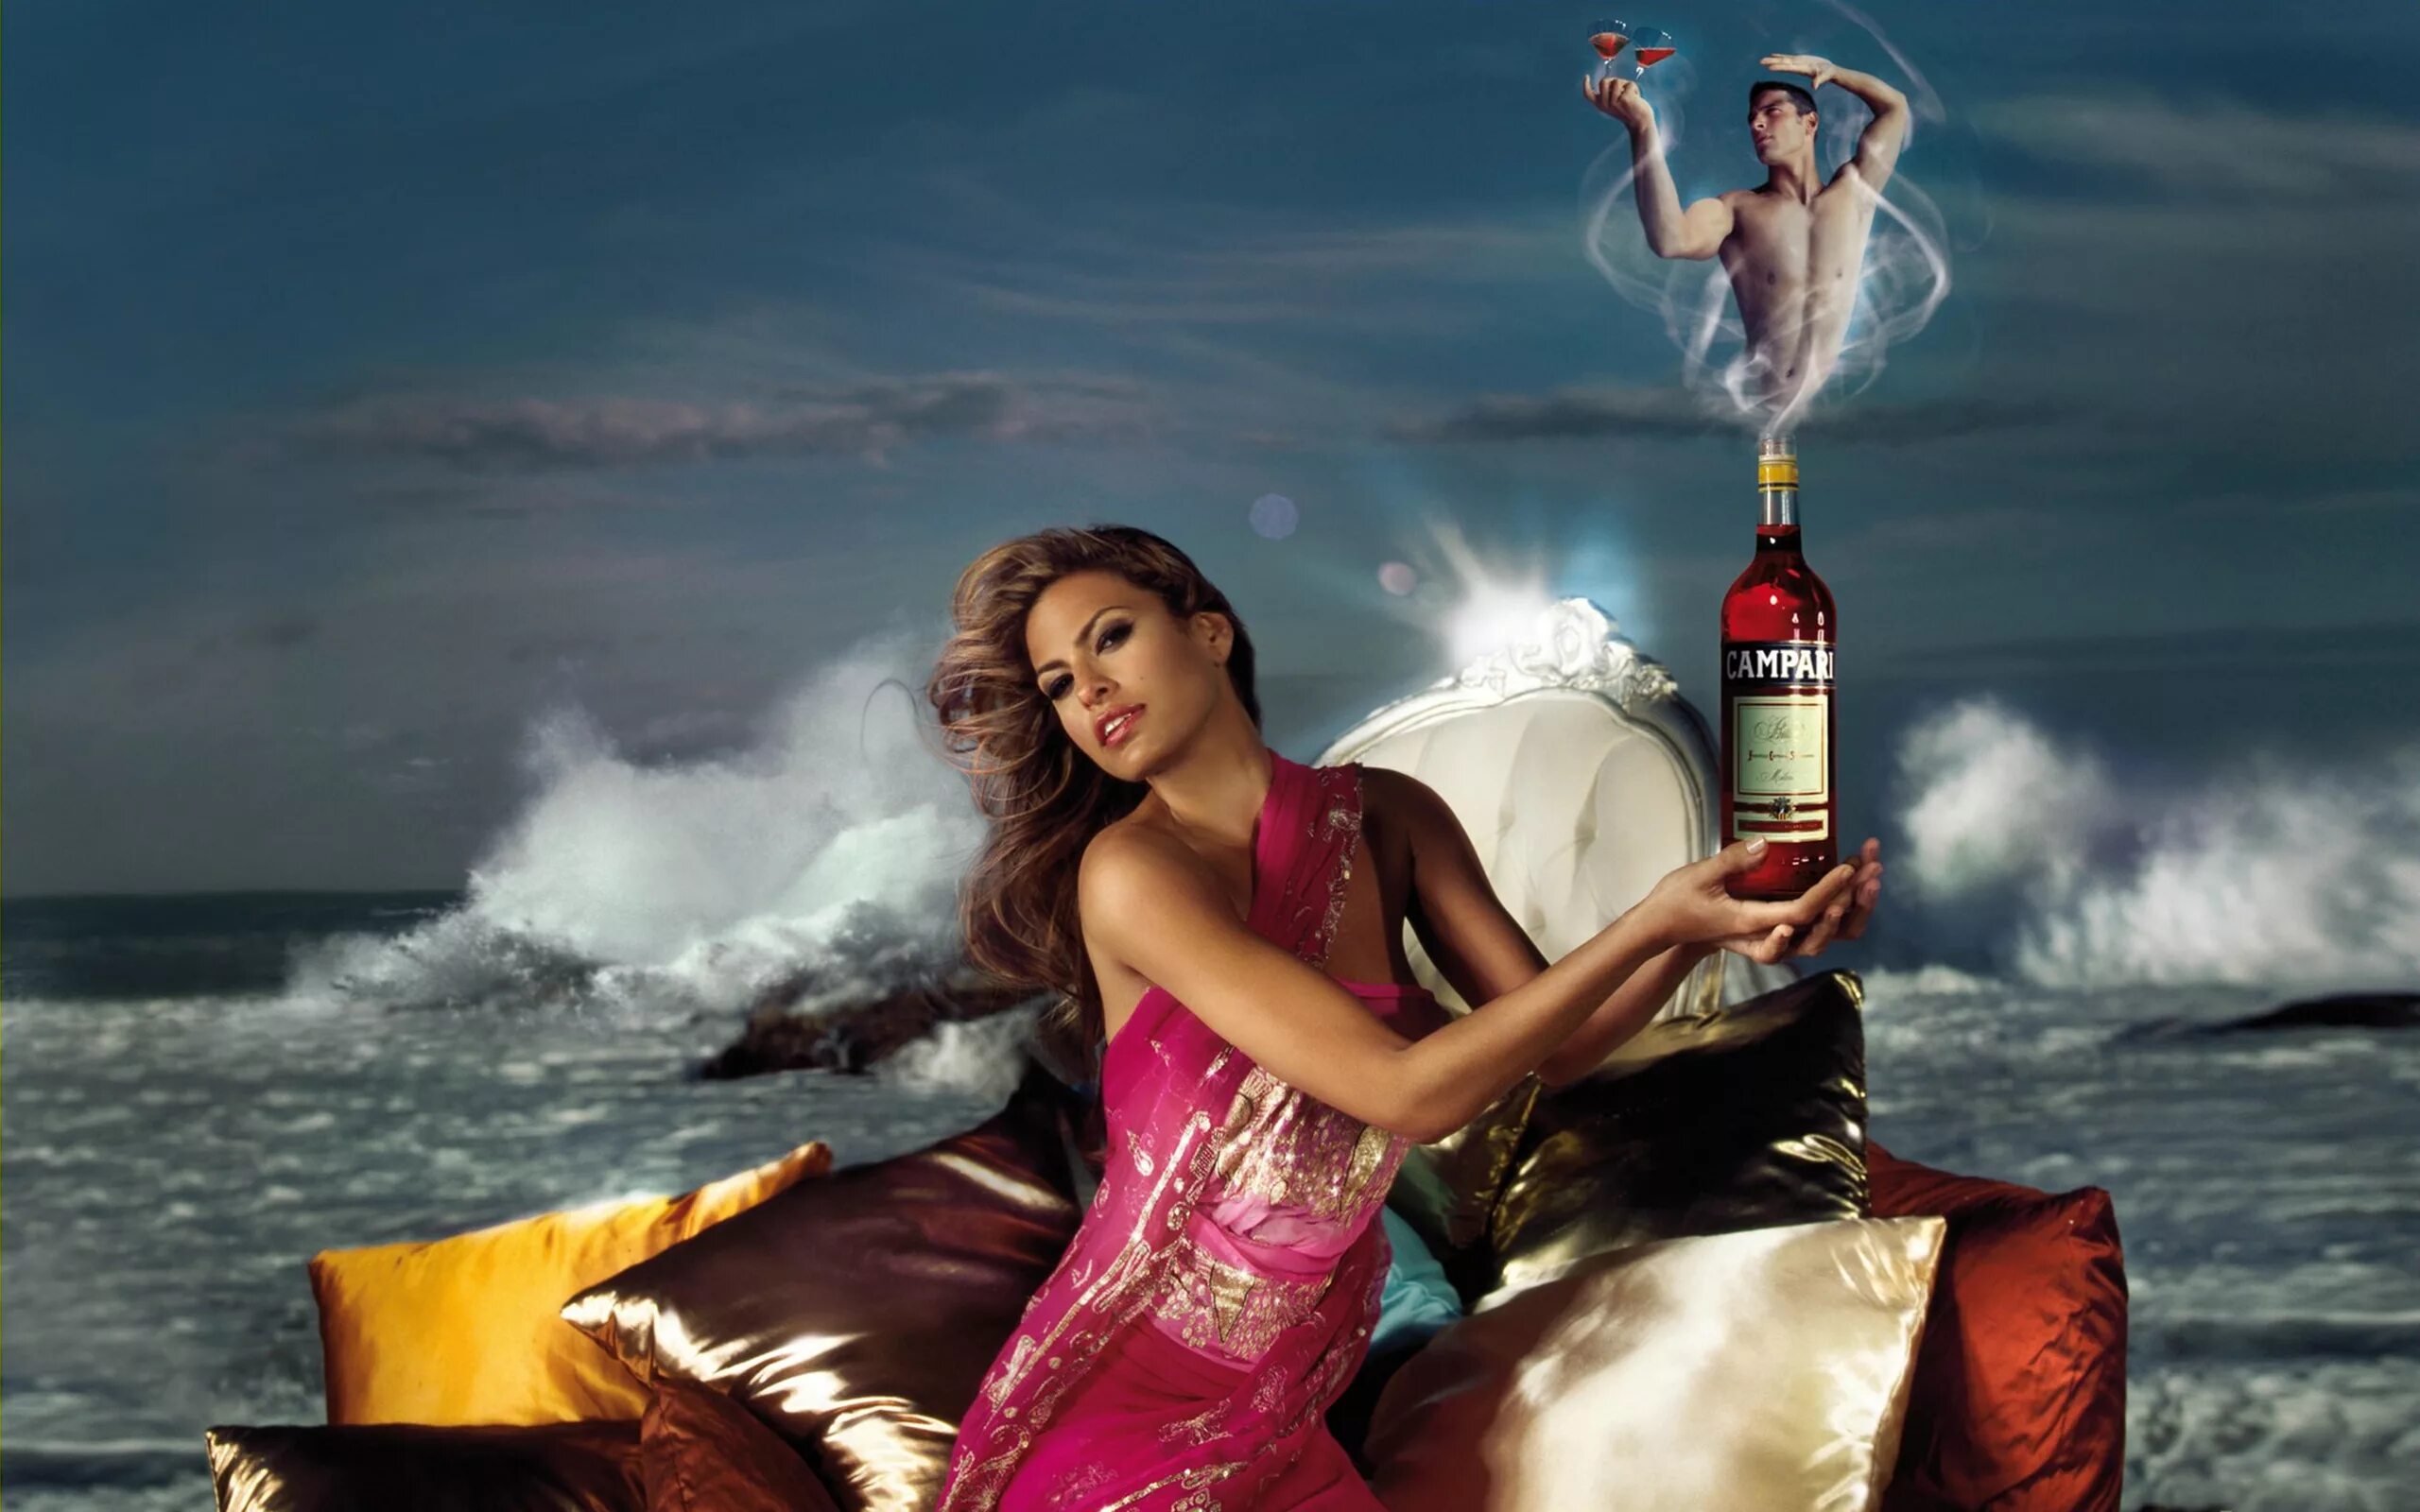 Реклама Кампари с Евой Мендес.